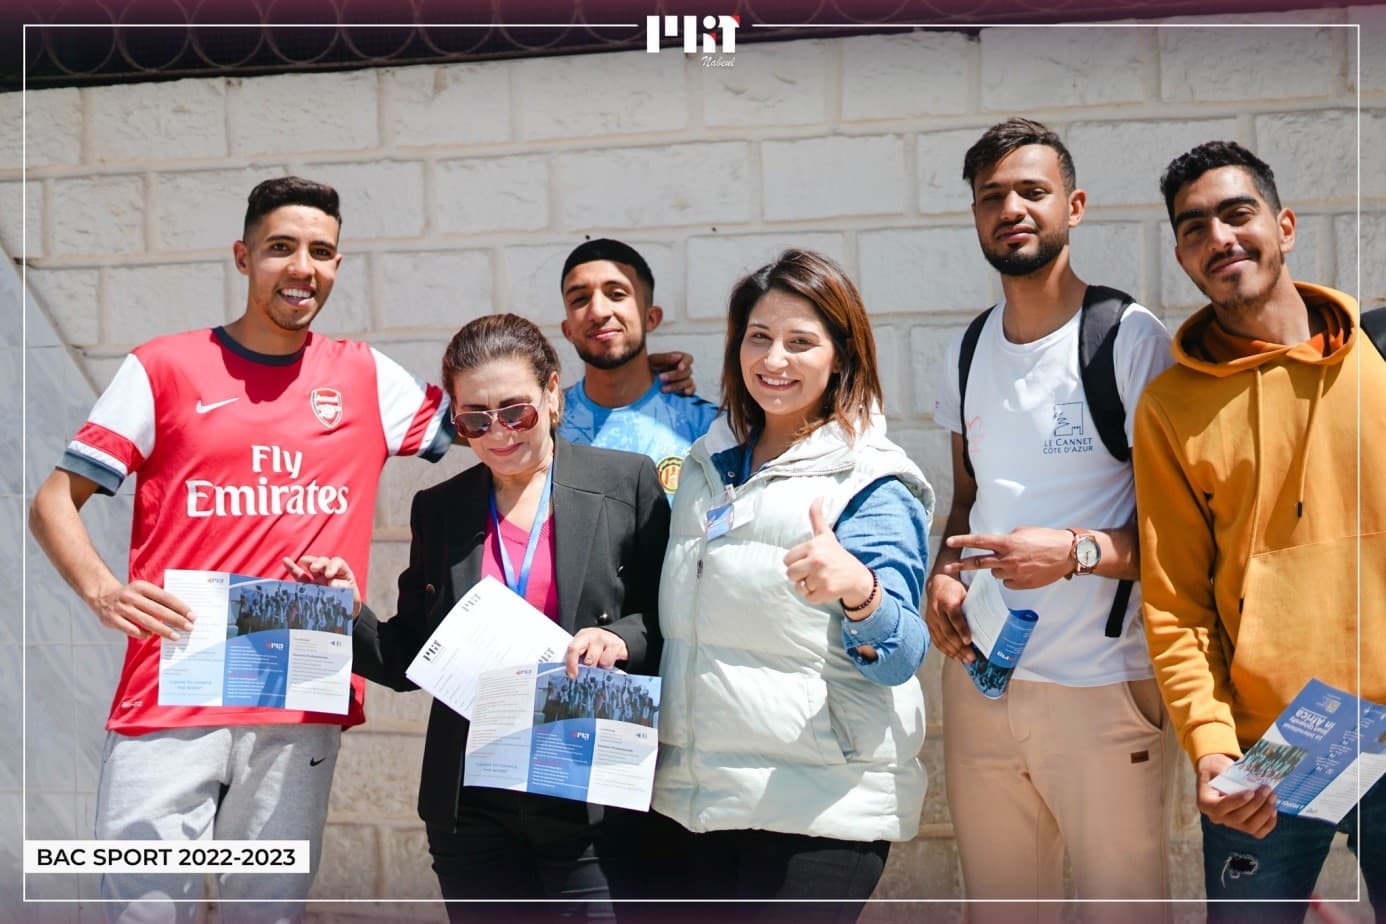 L’université méditerranéenne, MIT Nabeul supporte et encourage les bacheliers du Lycée Taieb Mhiri - Menzel Tmim